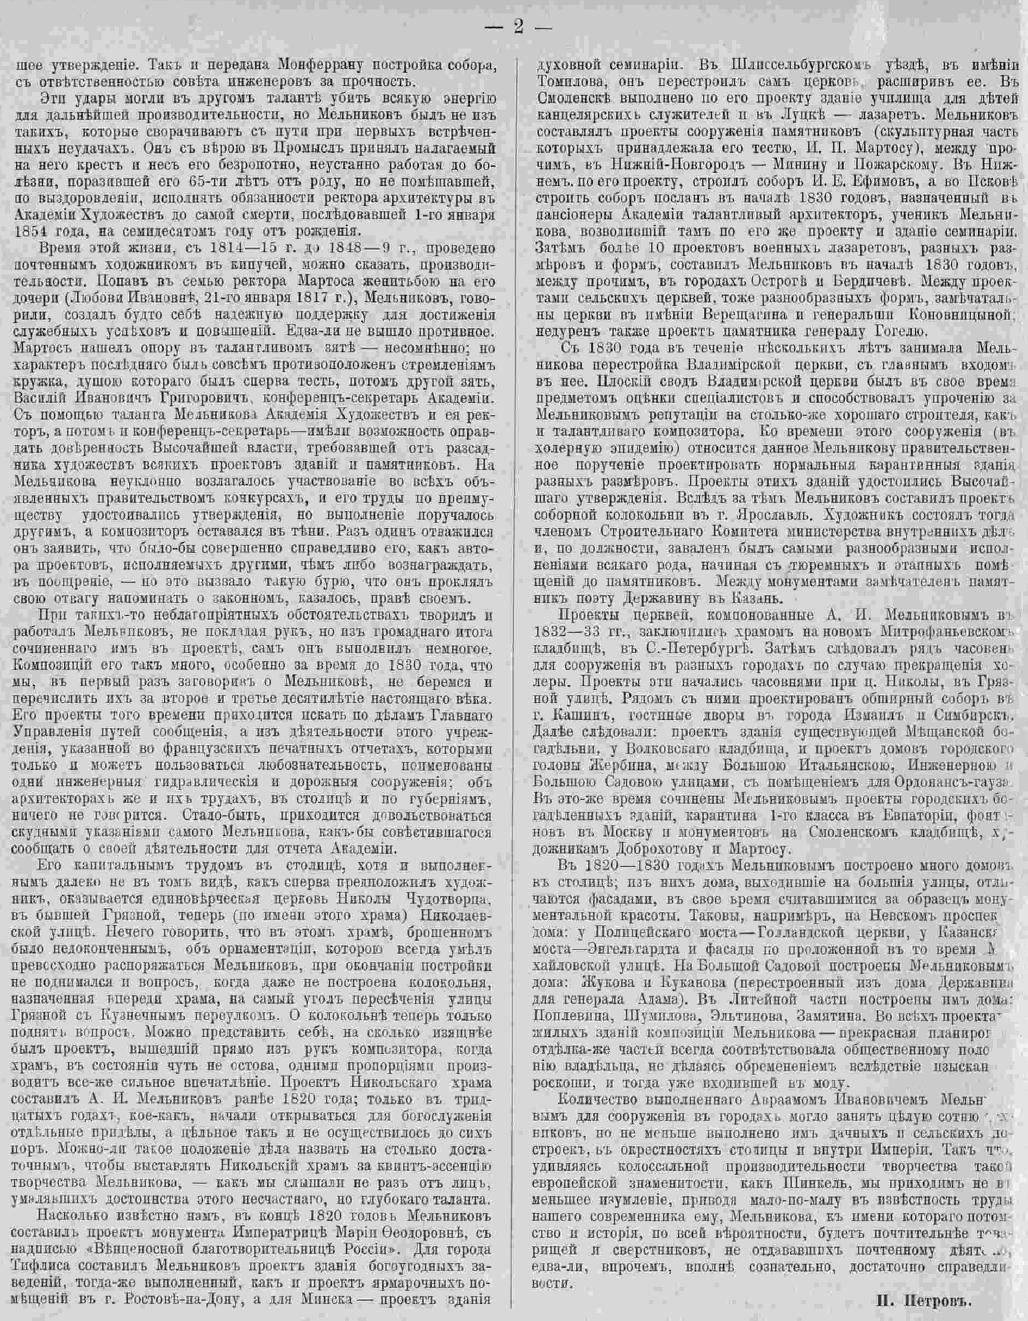 Авраам Иванович Мельников. Статья Петра Николаевича Петрова. Зодчий, 1885